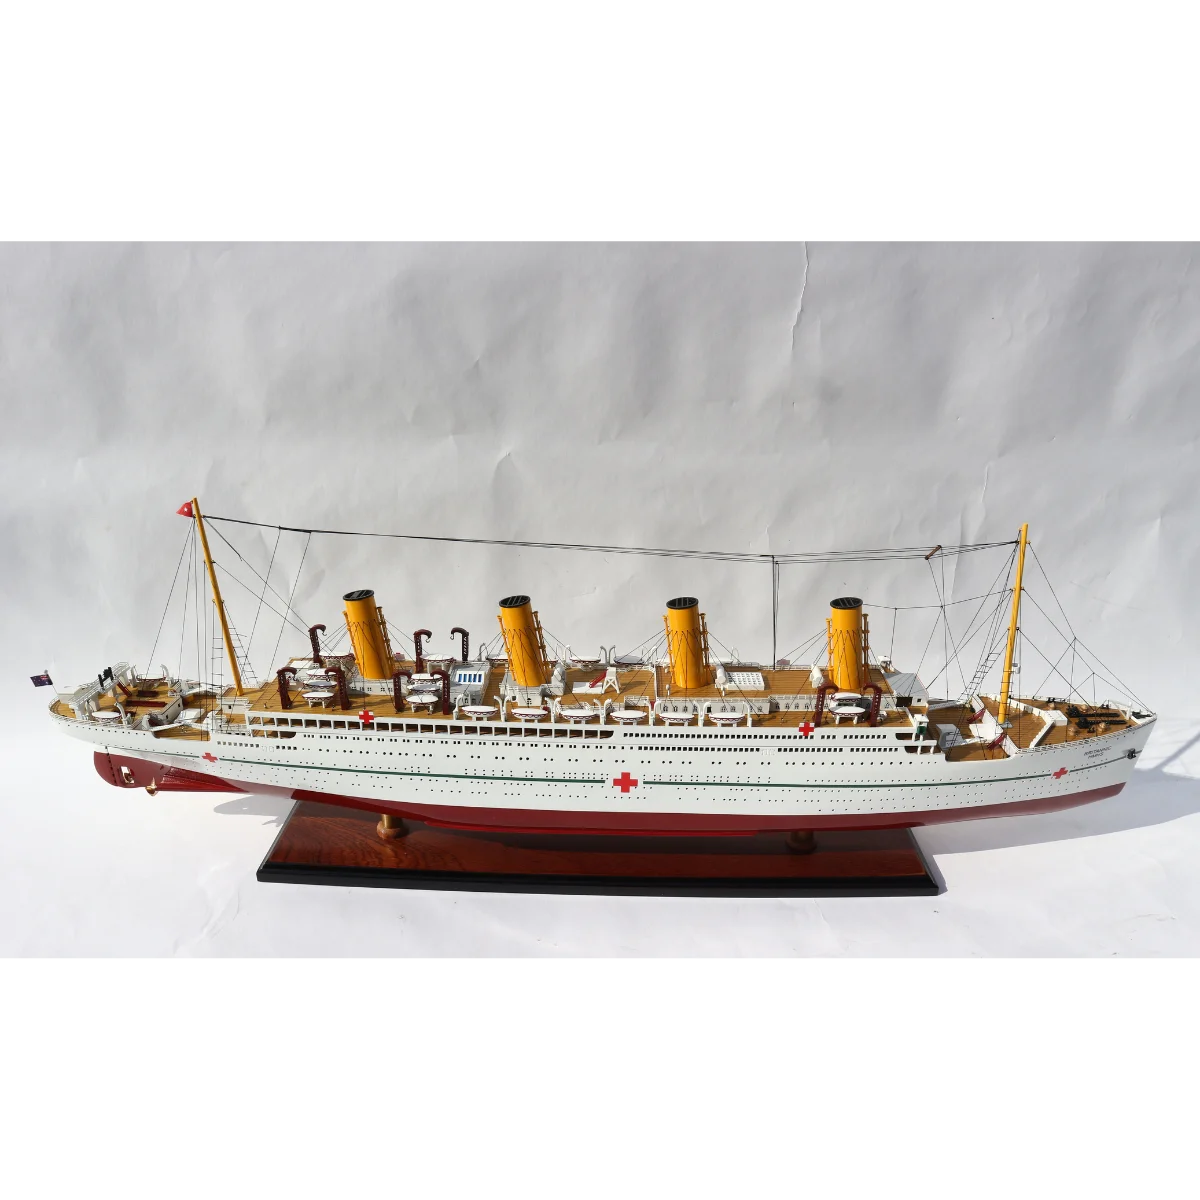 11250 Diecast Mô hình tàu đồ chơi Atlas hmhs britannic Ocean Liner Cruiser  cho bộ sưu tập  Lazadavn